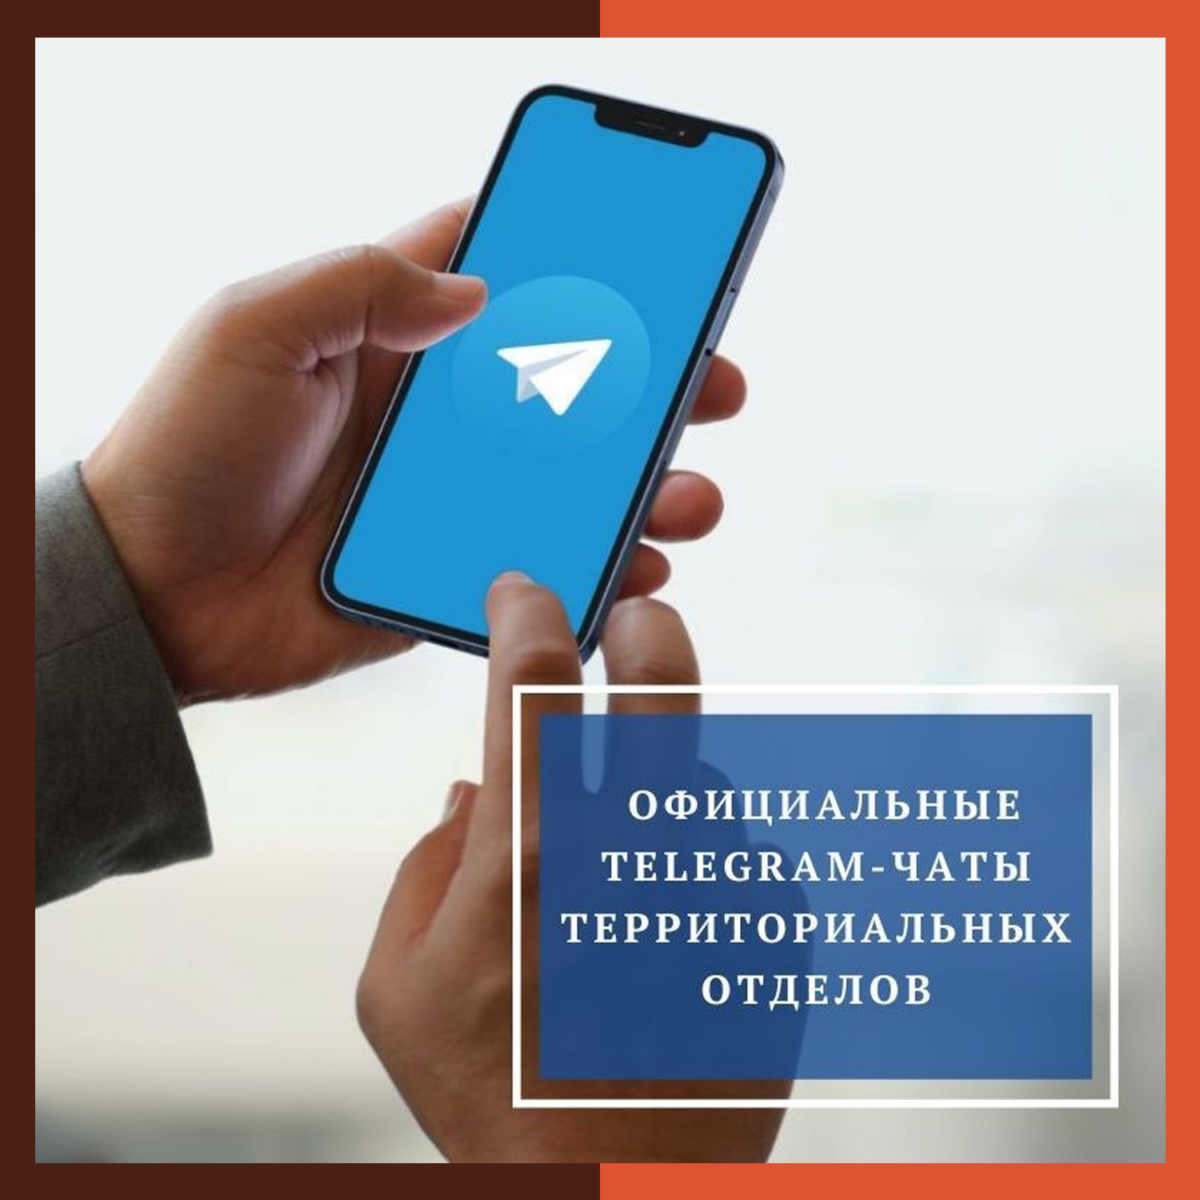 В округе работают официальные Telegram-чаты территориальных отделов 👇